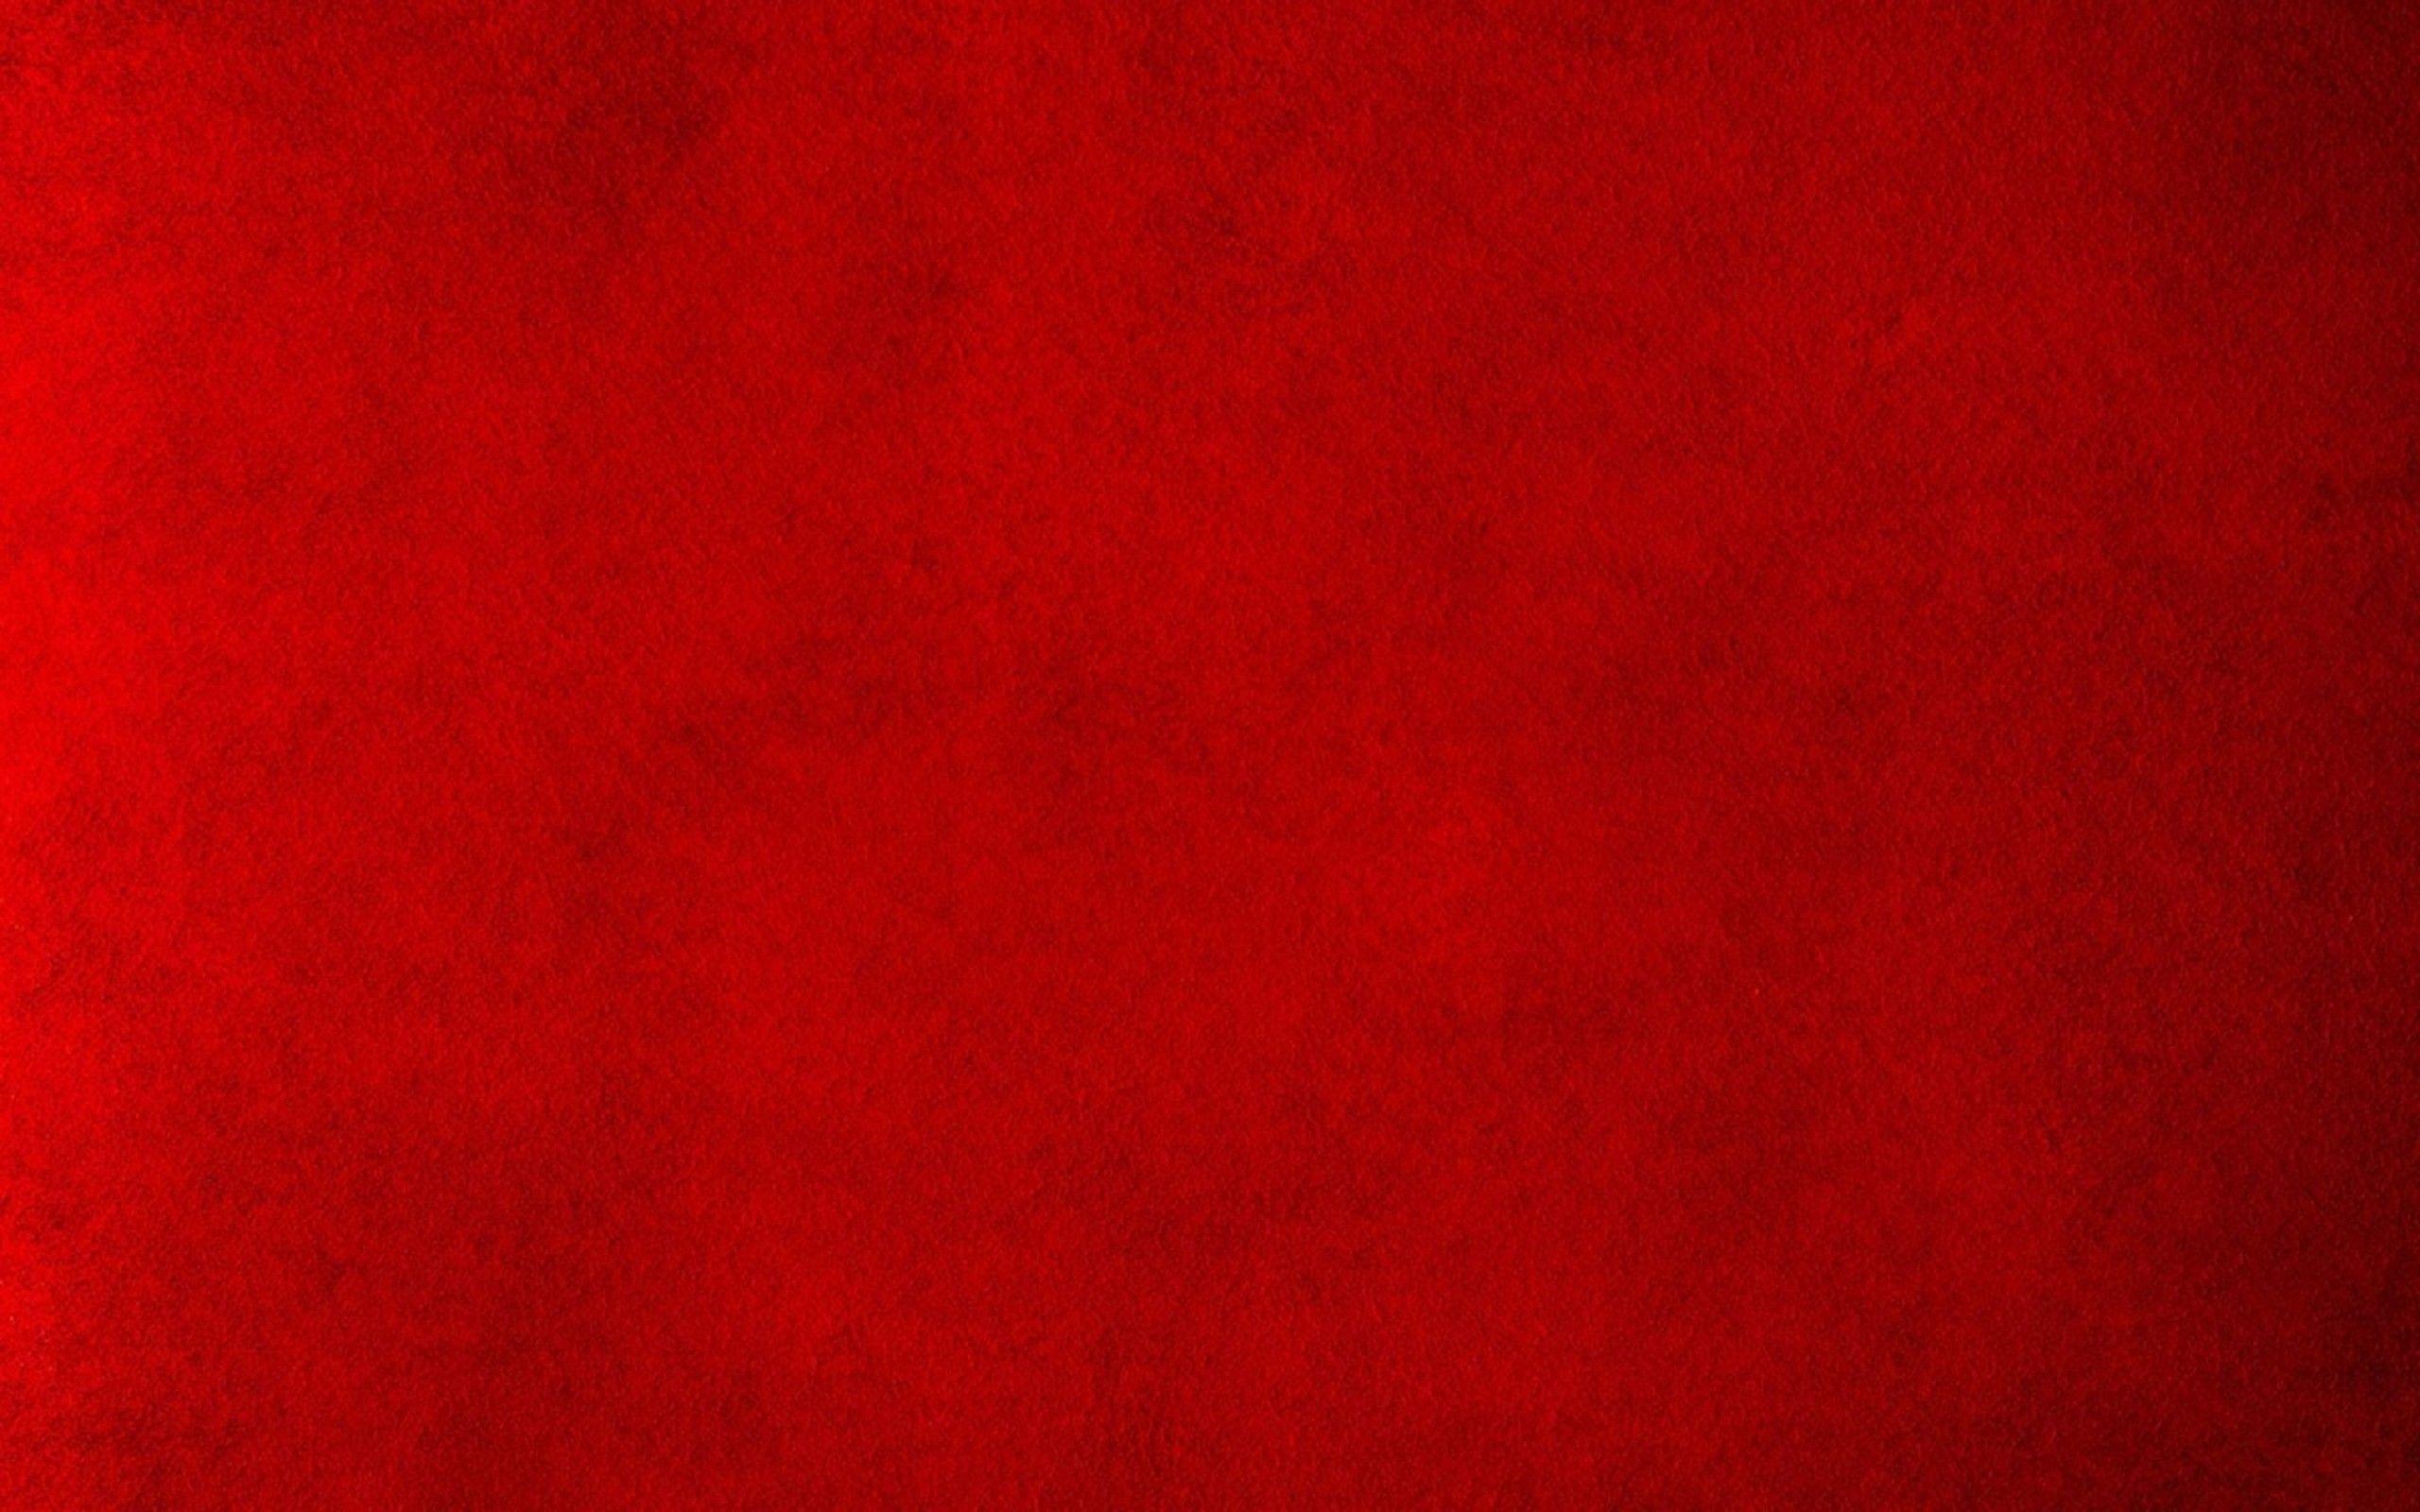 Red Wallpaper Background. wallpaper. Red wallpaper